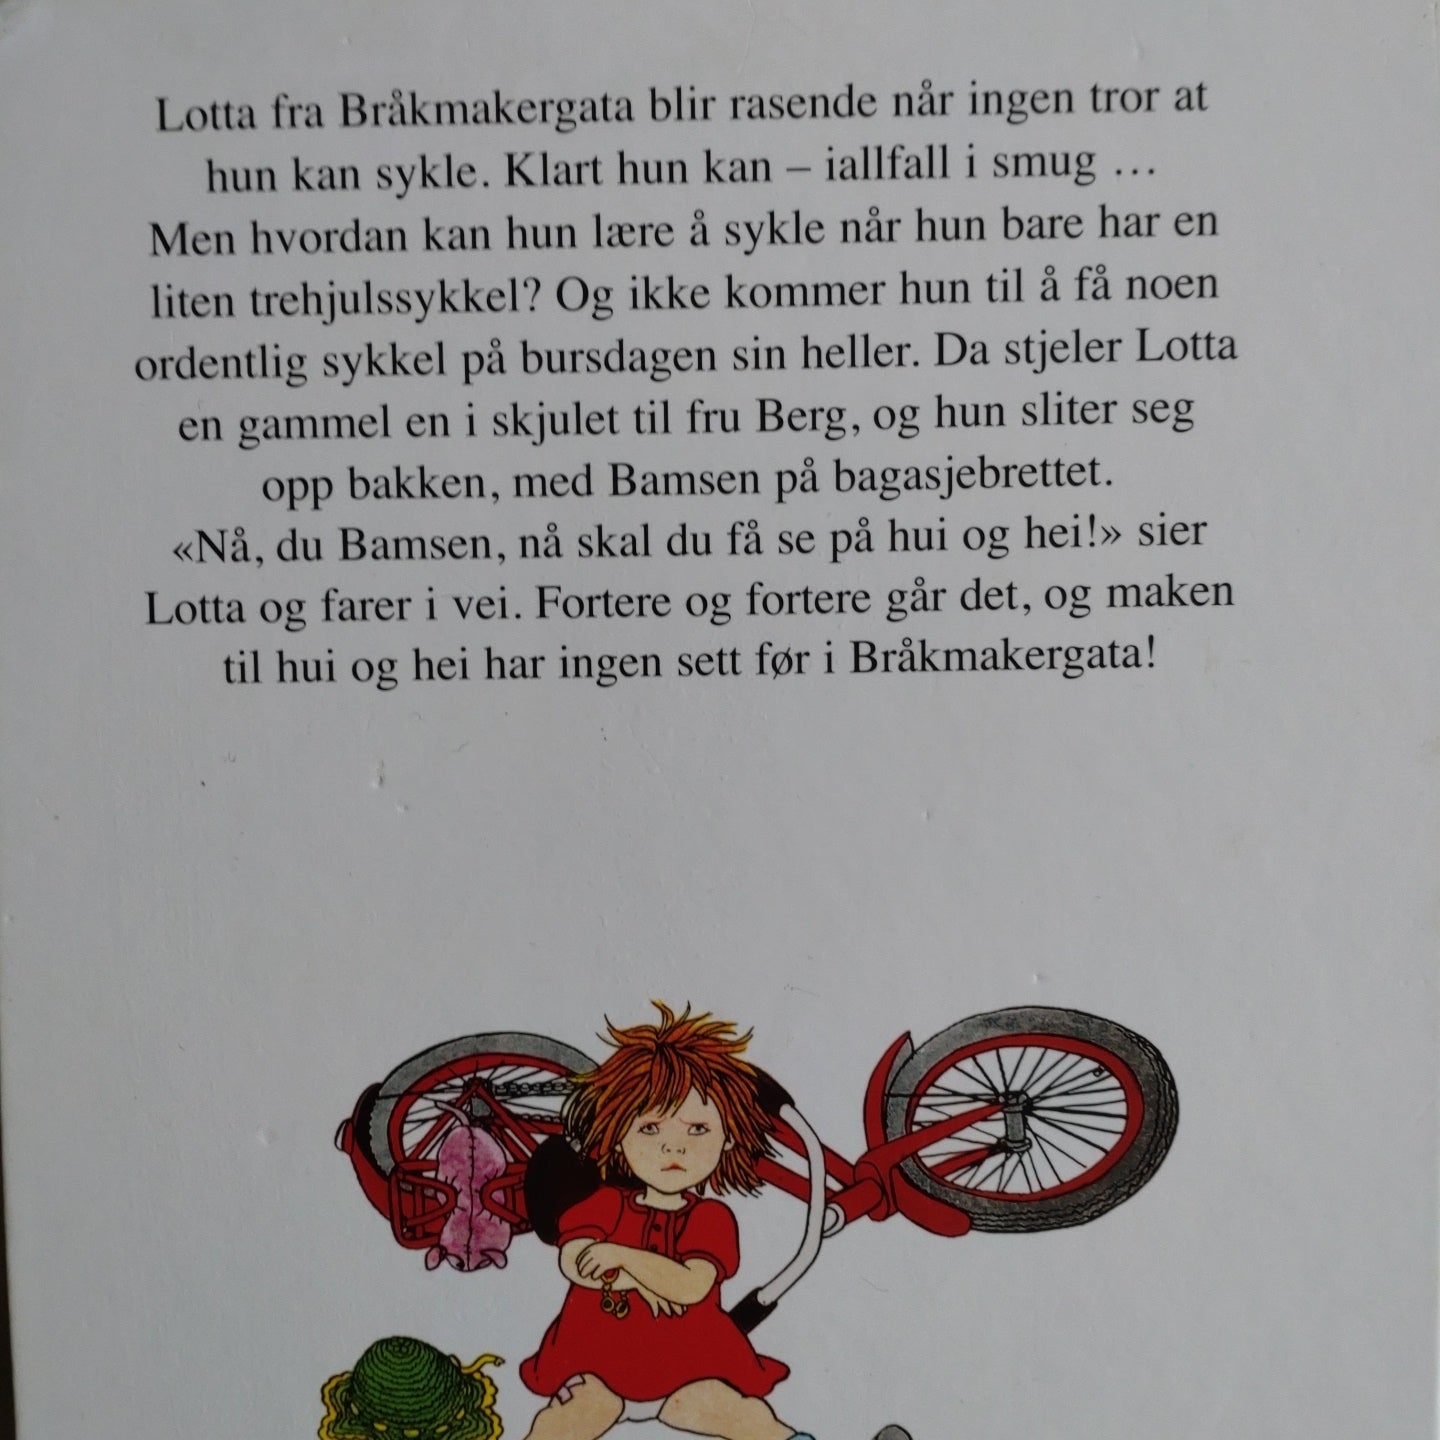 Lindgren, Astrid: Jo visst kan Lotta sykle